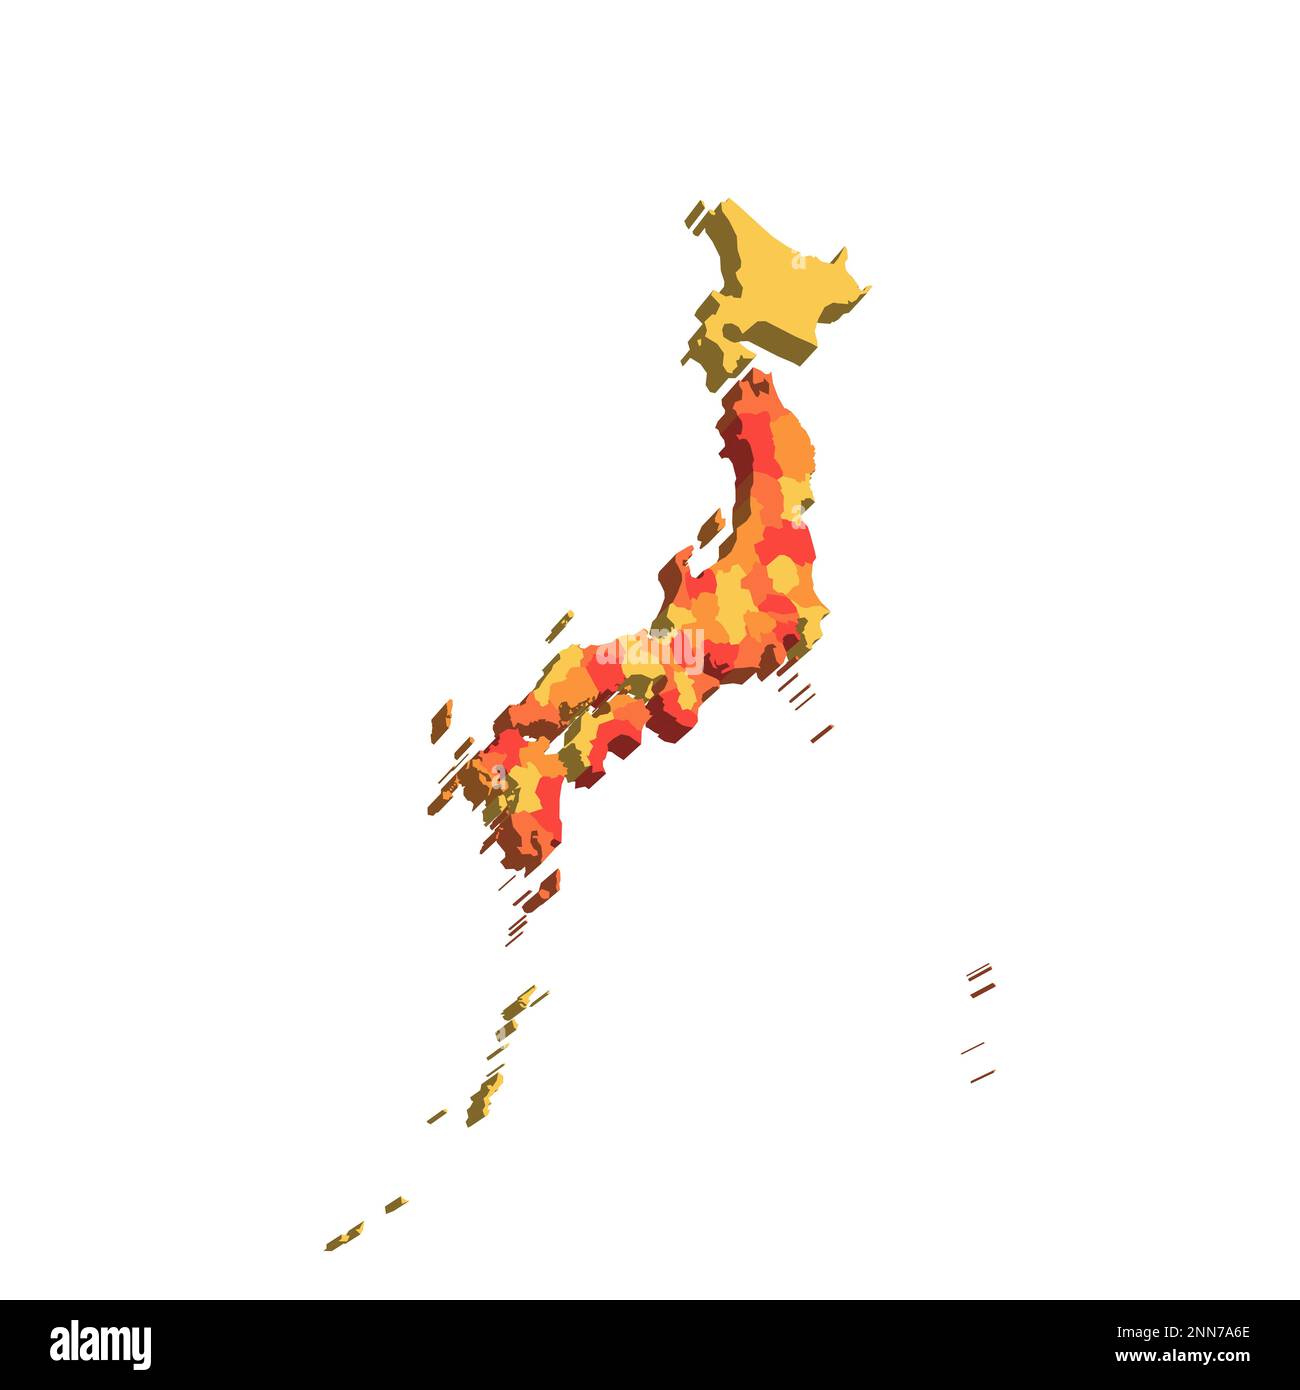 Politische Karte der Verwaltungseinheiten Japans - Präfekturen, Metropilis Tokio, Territorium Hokaido und städtische Präfekturen Kyoto und Osaka. Zuordnung mit Beschriftungen. Stock Vektor